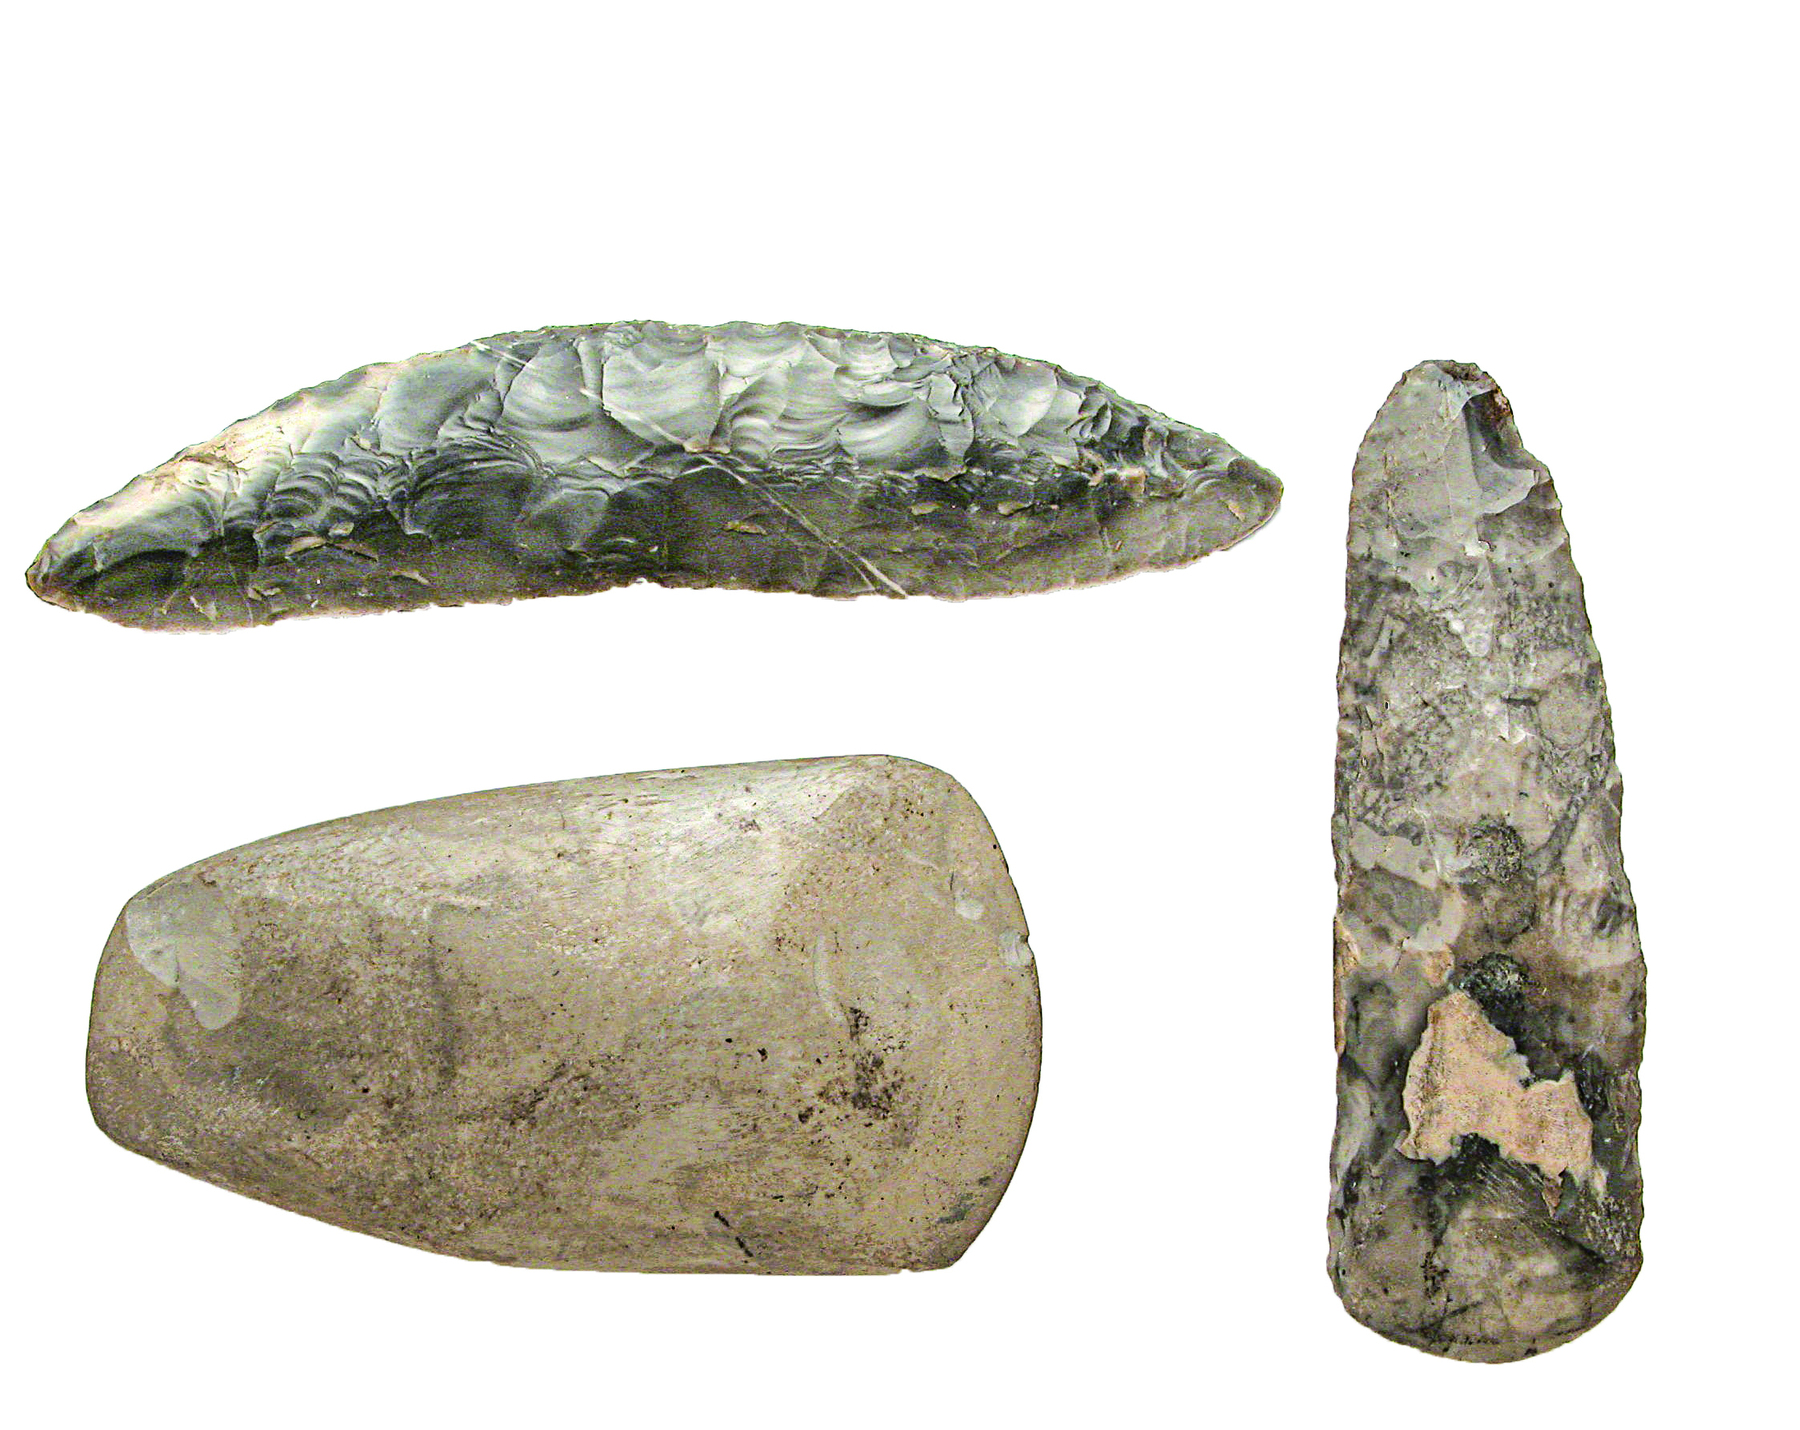 Fotografia. Três artefatos de pedra de superfície lisa e arredondada.